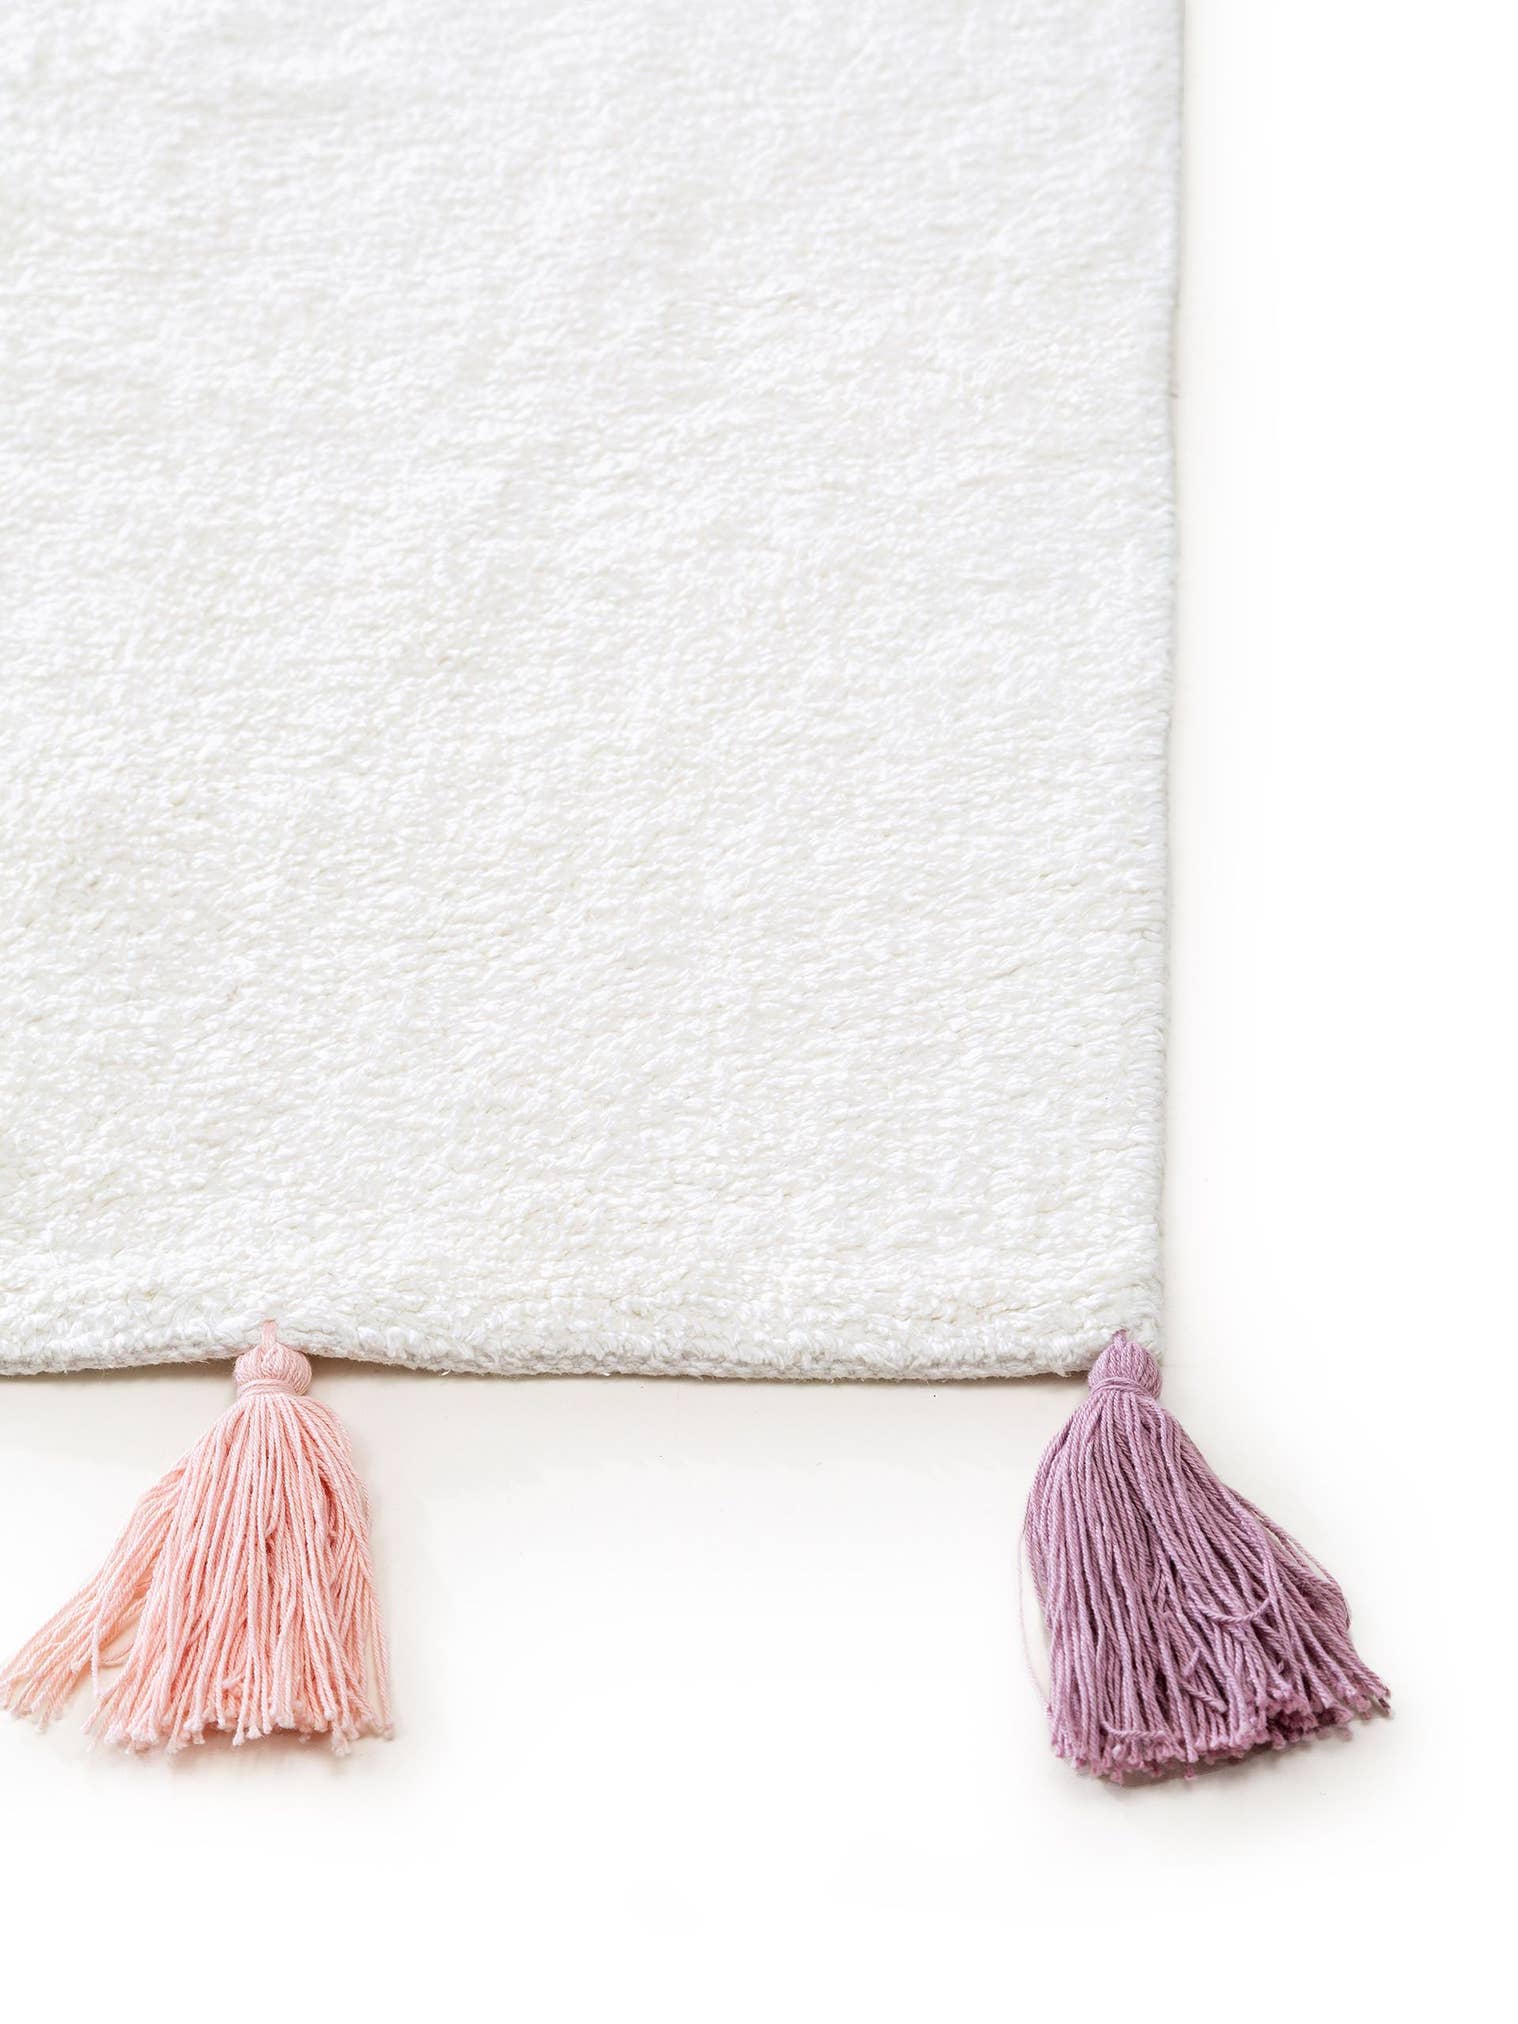 Teppich aus 100% Baumwolle in Weiß mit 6 bis 10 mm hohem Flor von Lytte